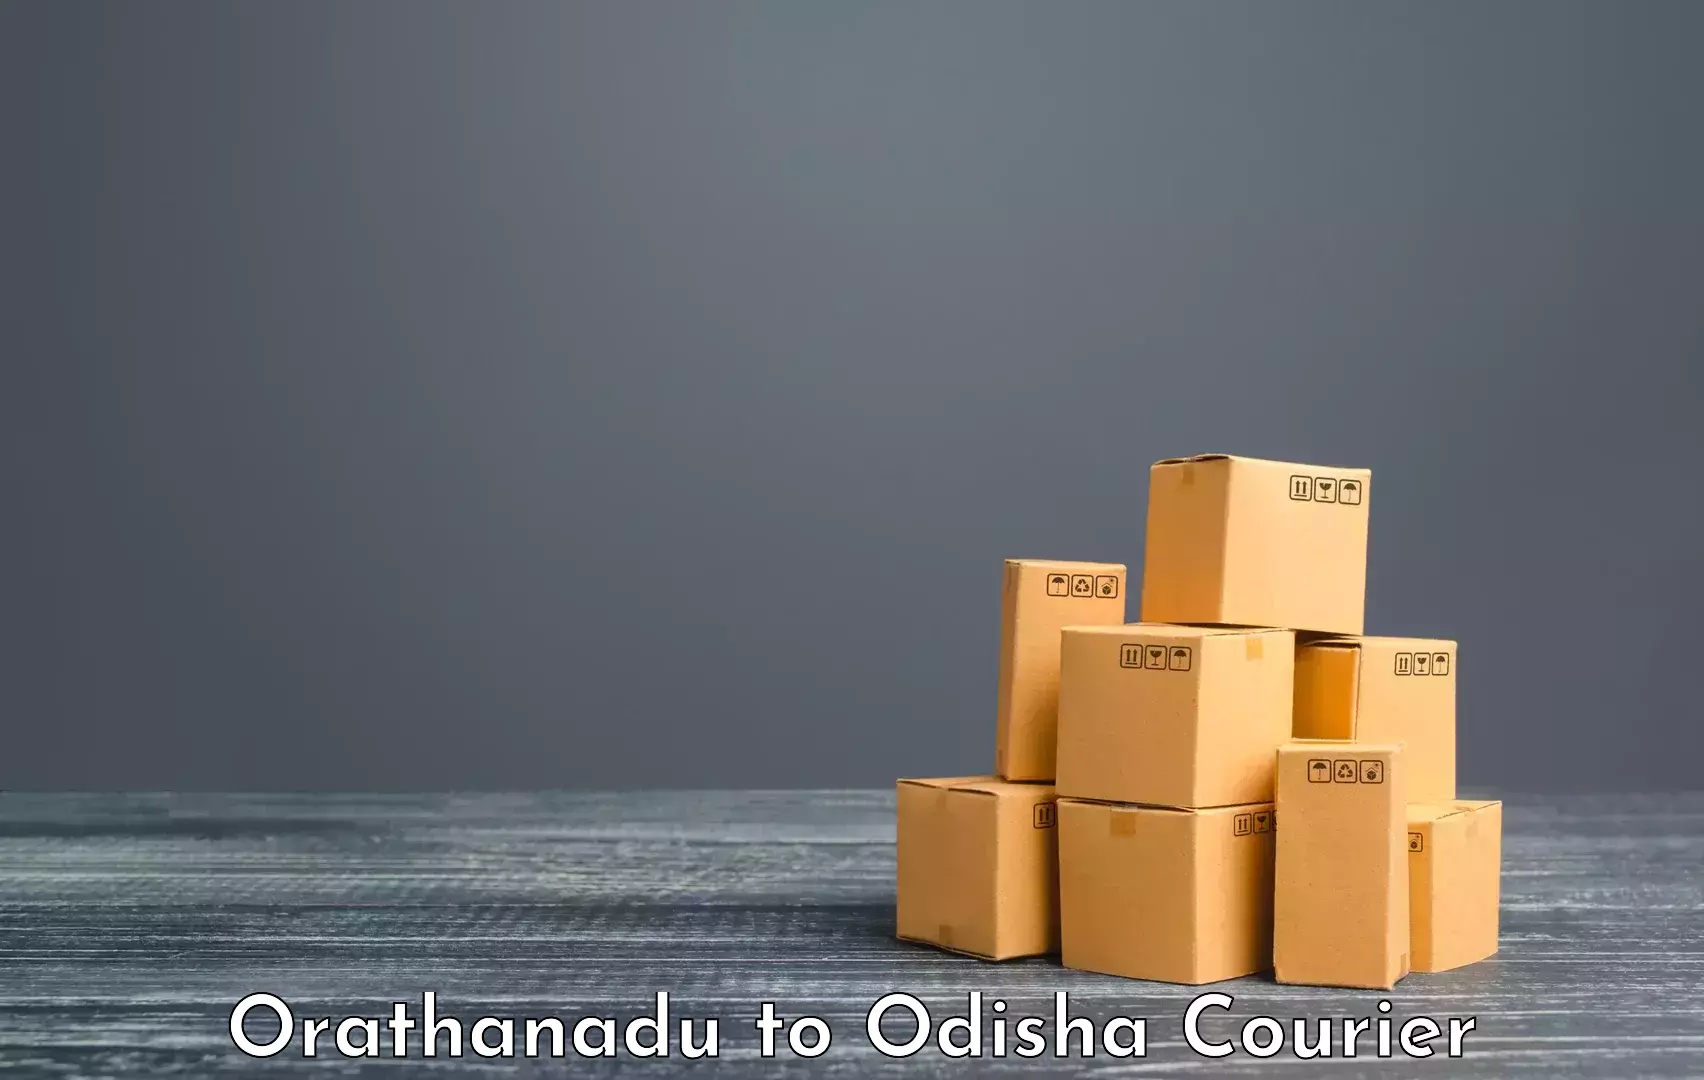 Luggage forwarding service Orathanadu to Kupari